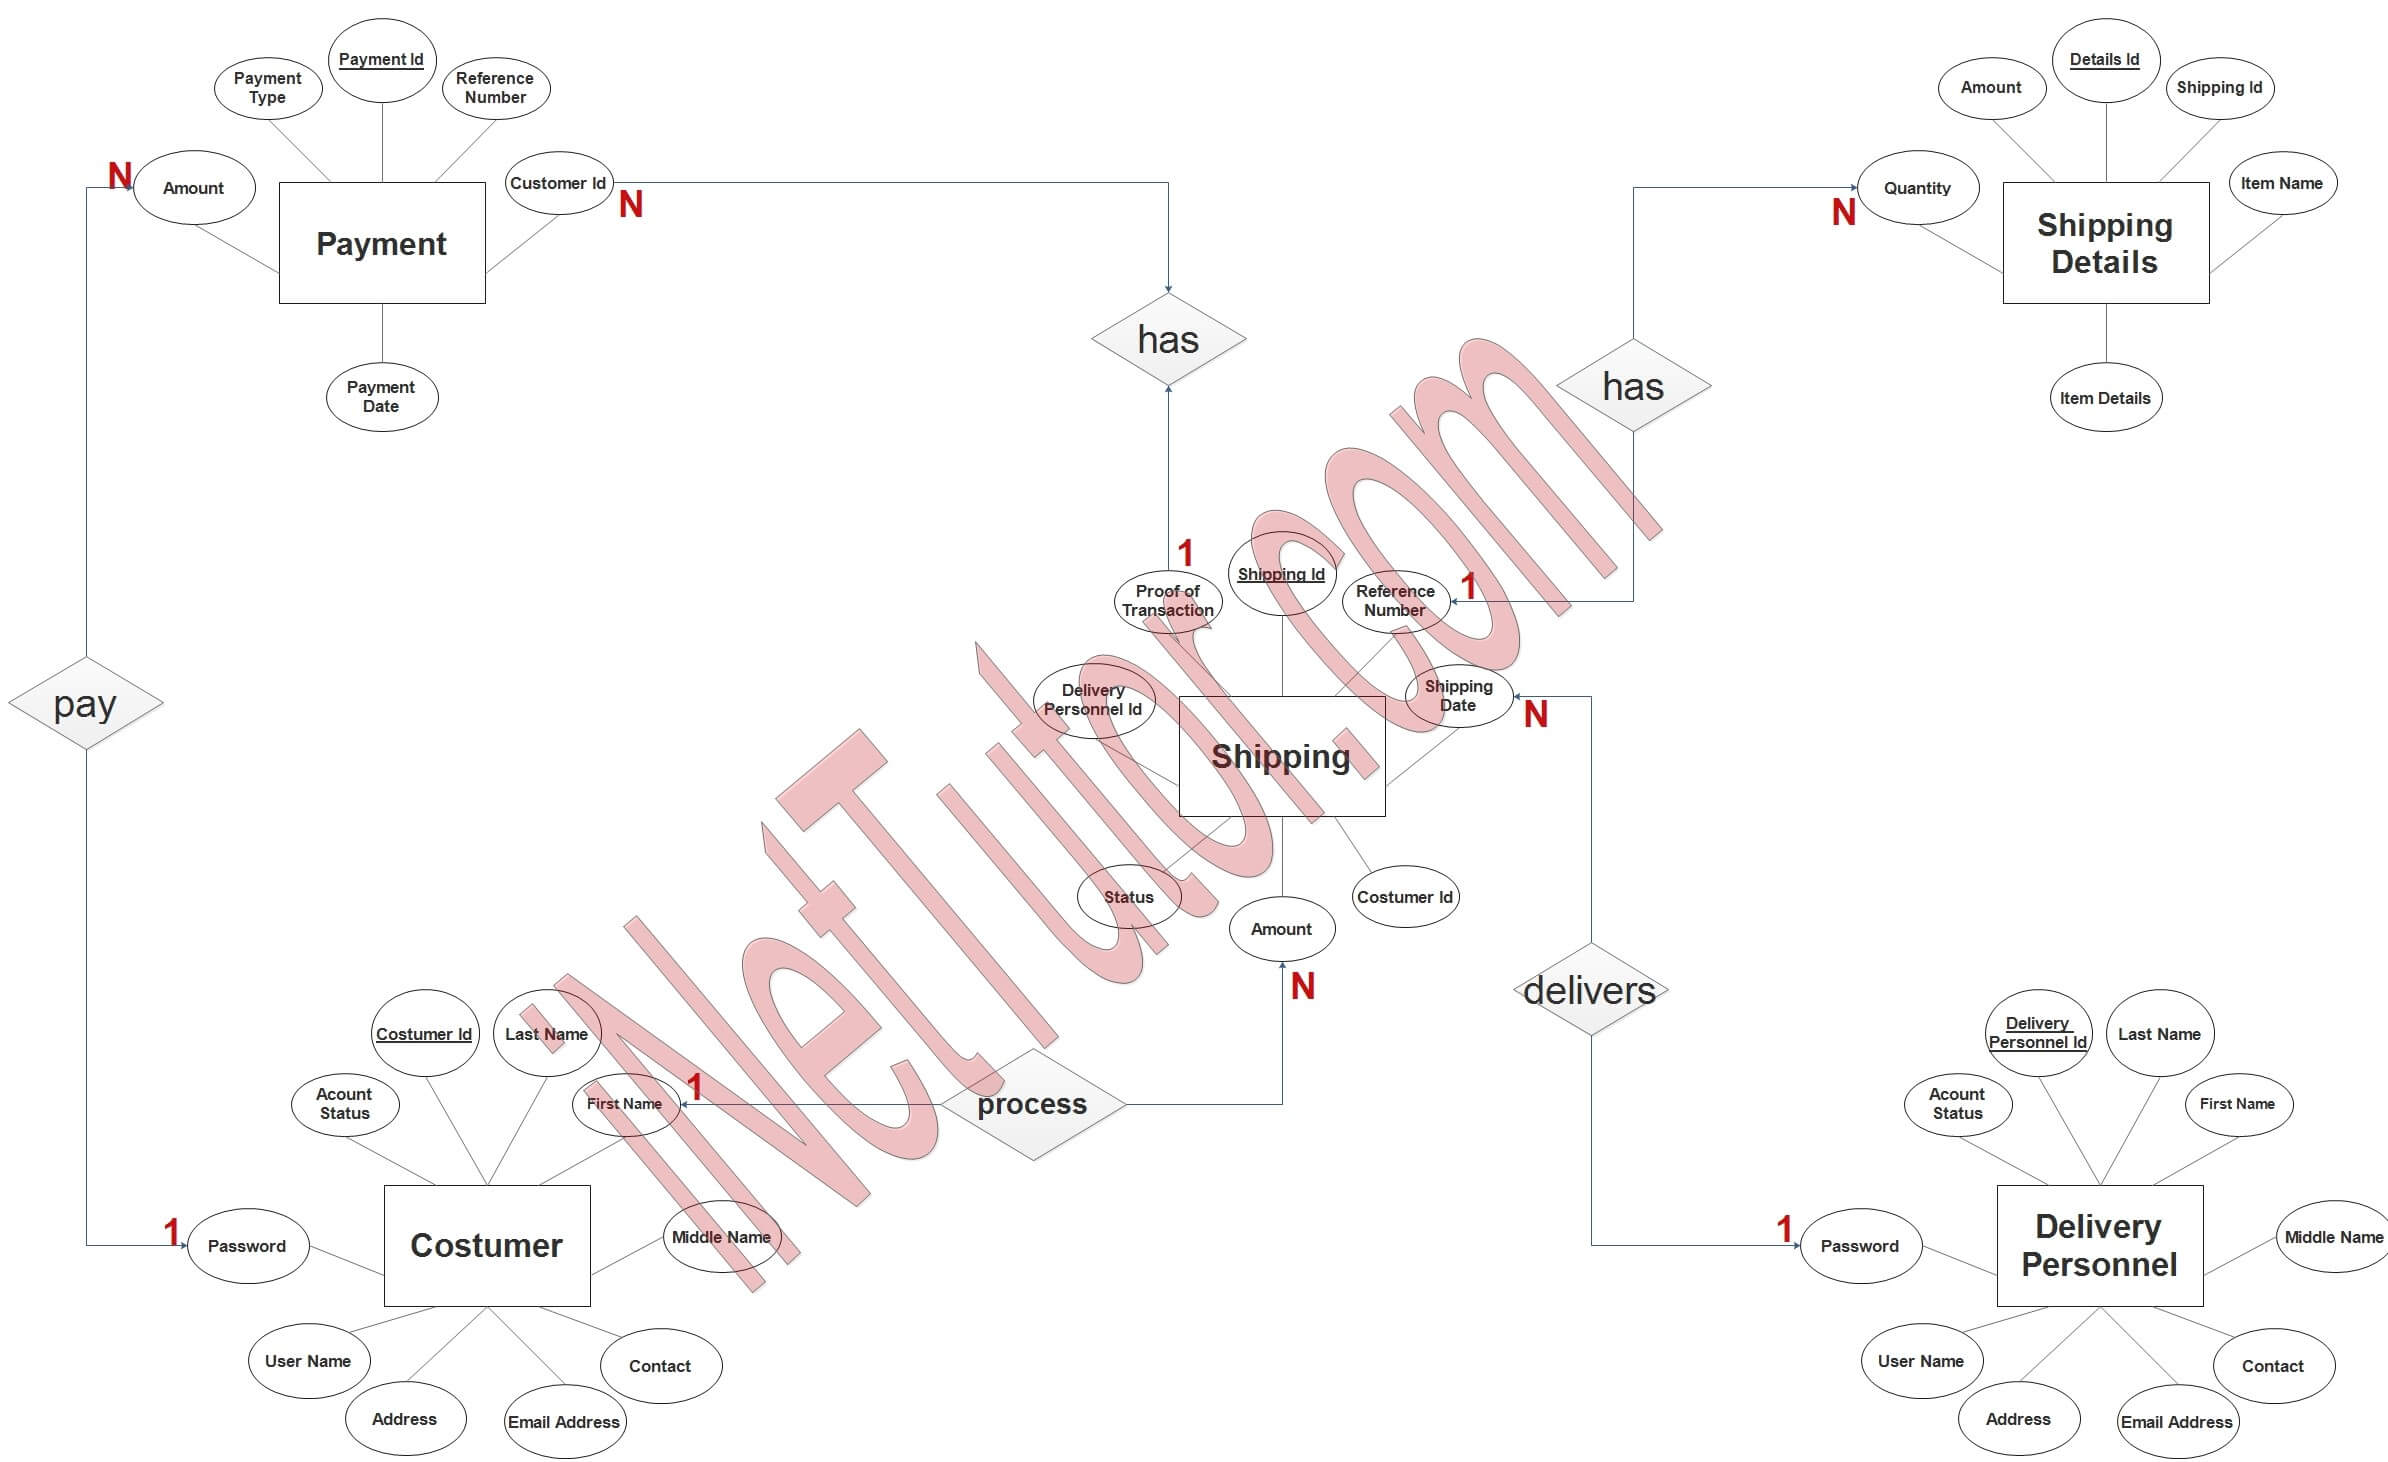 Shipping Management System ER Diagram - Step 3 Complete ERD